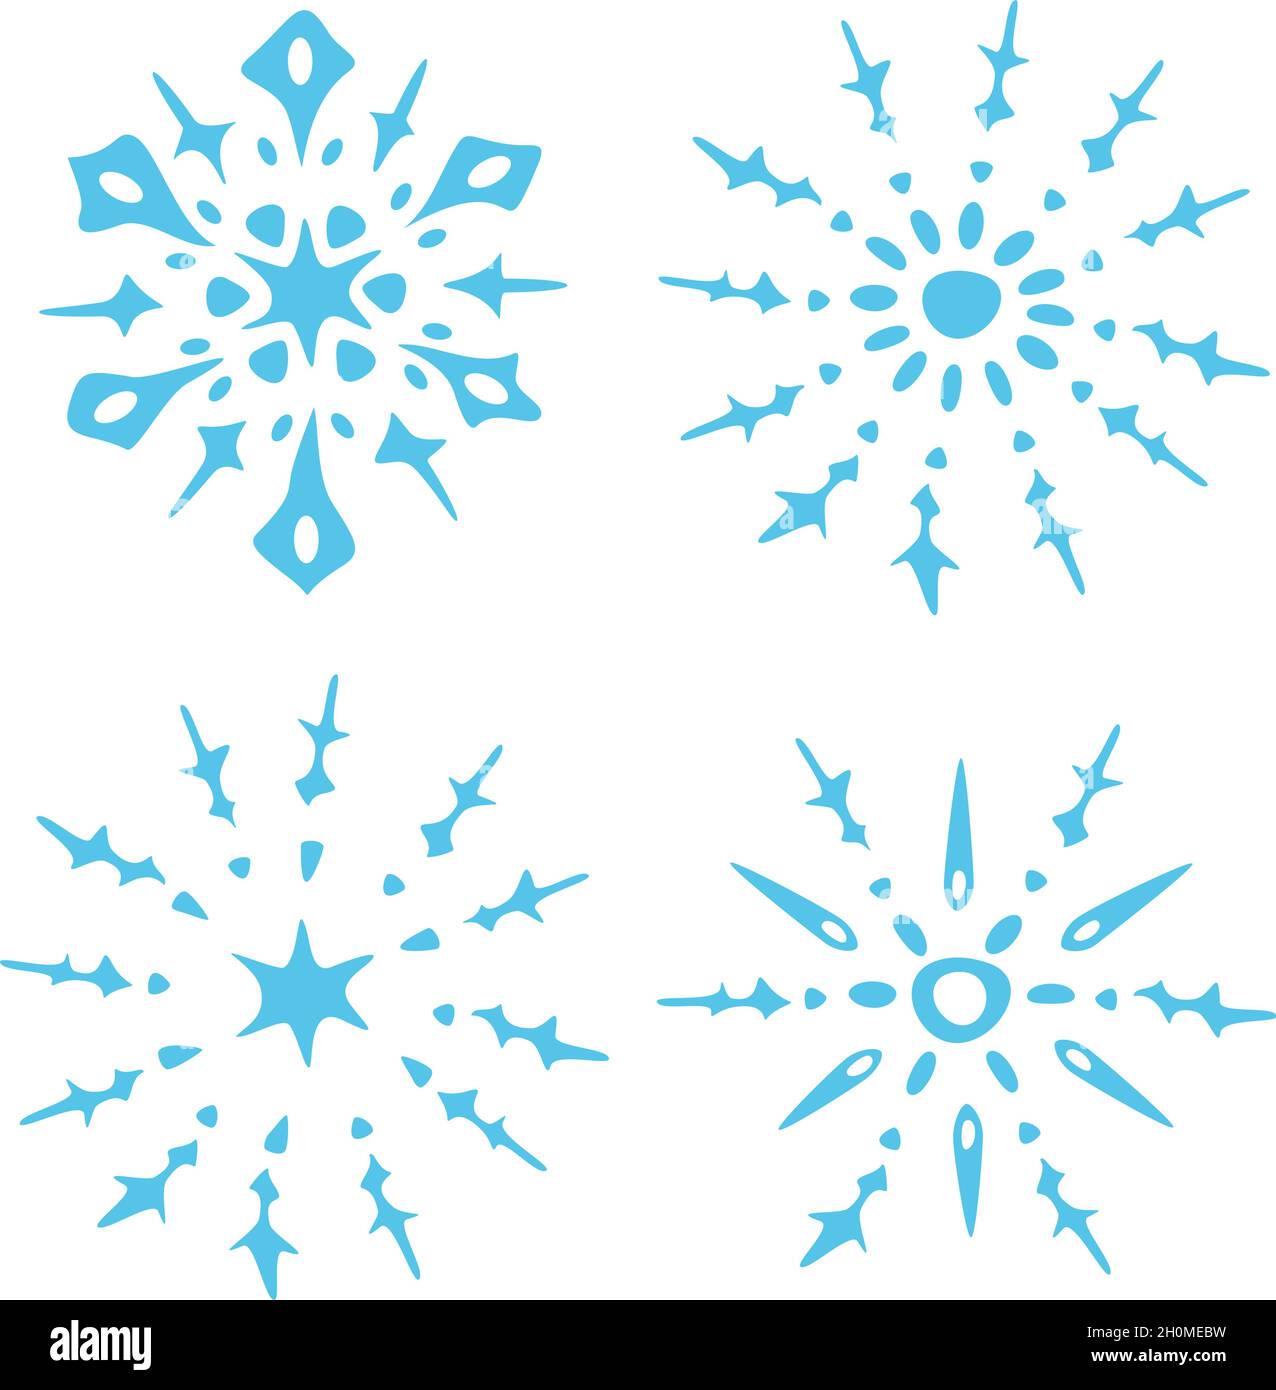 Vektor-Illustration mit Sammlung von ausgefallenen dekorativen Schneeflocken. Handgezeichnete Schneeflocken. Stock Vektor